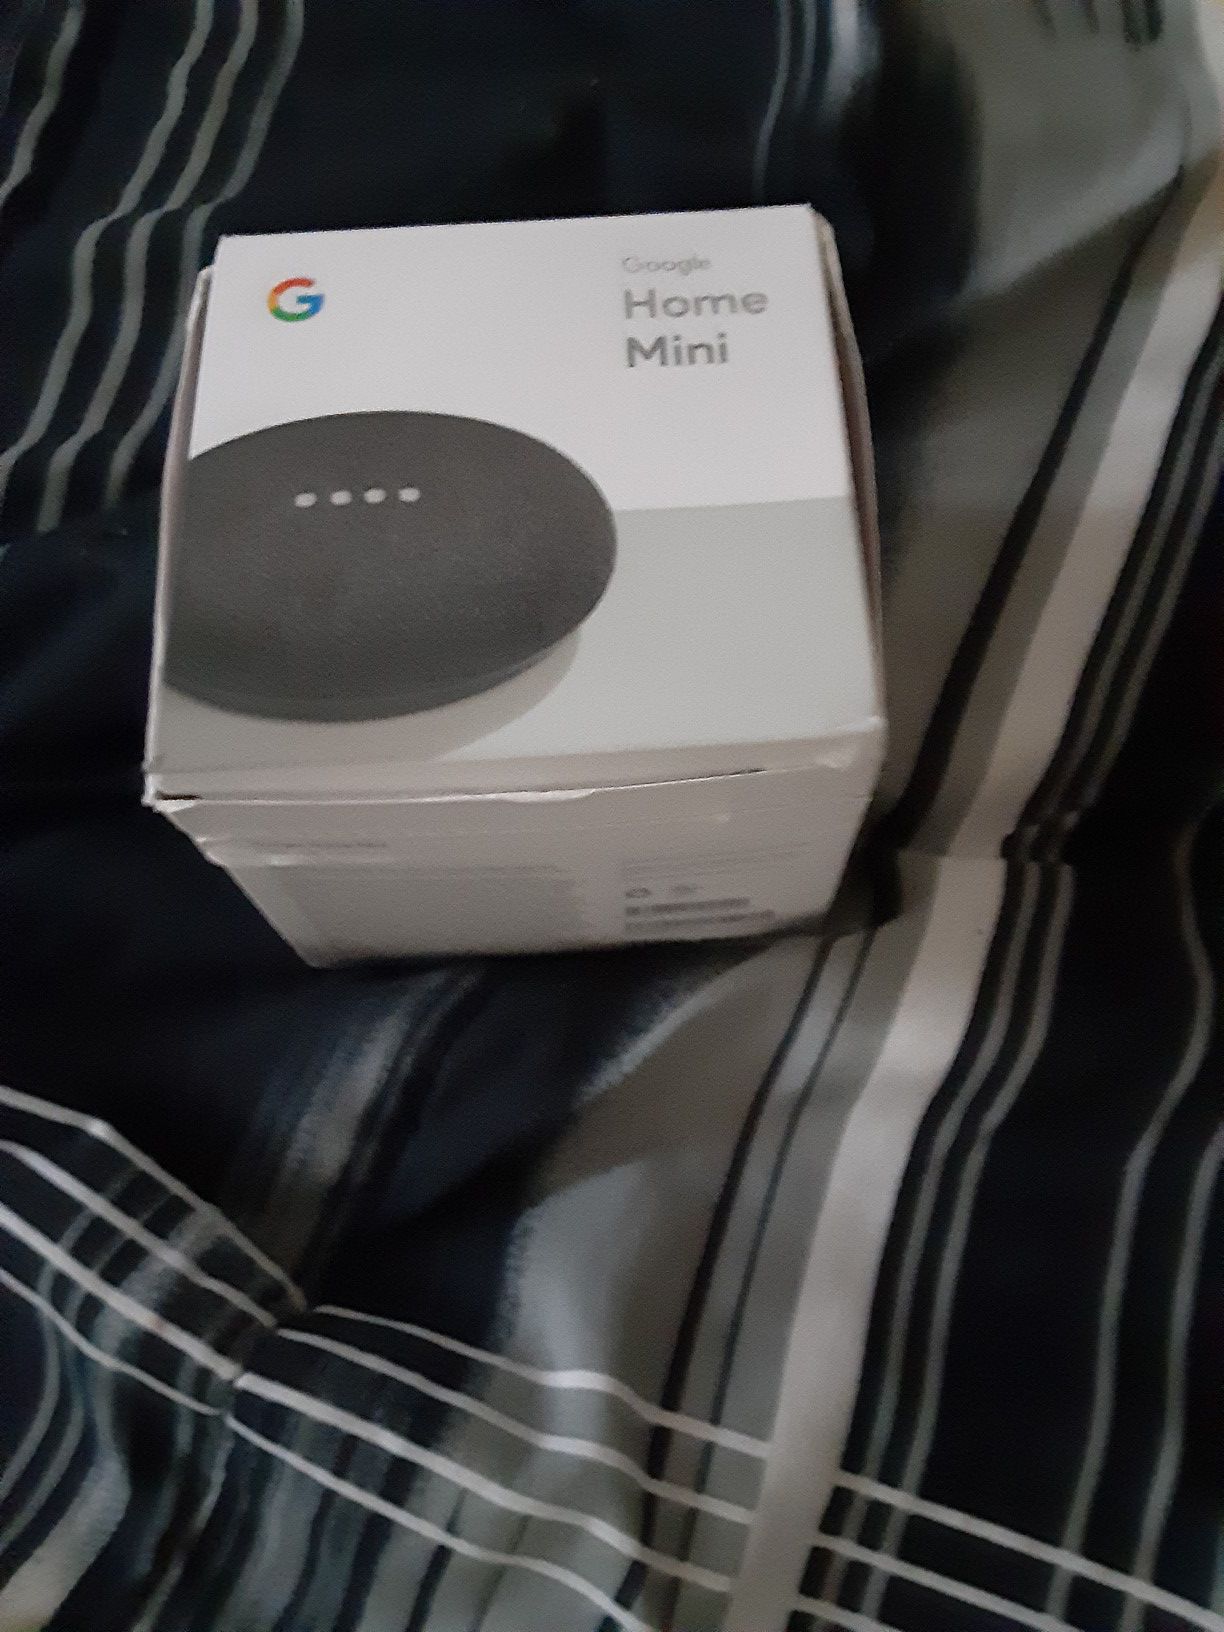 Google mini home speaker